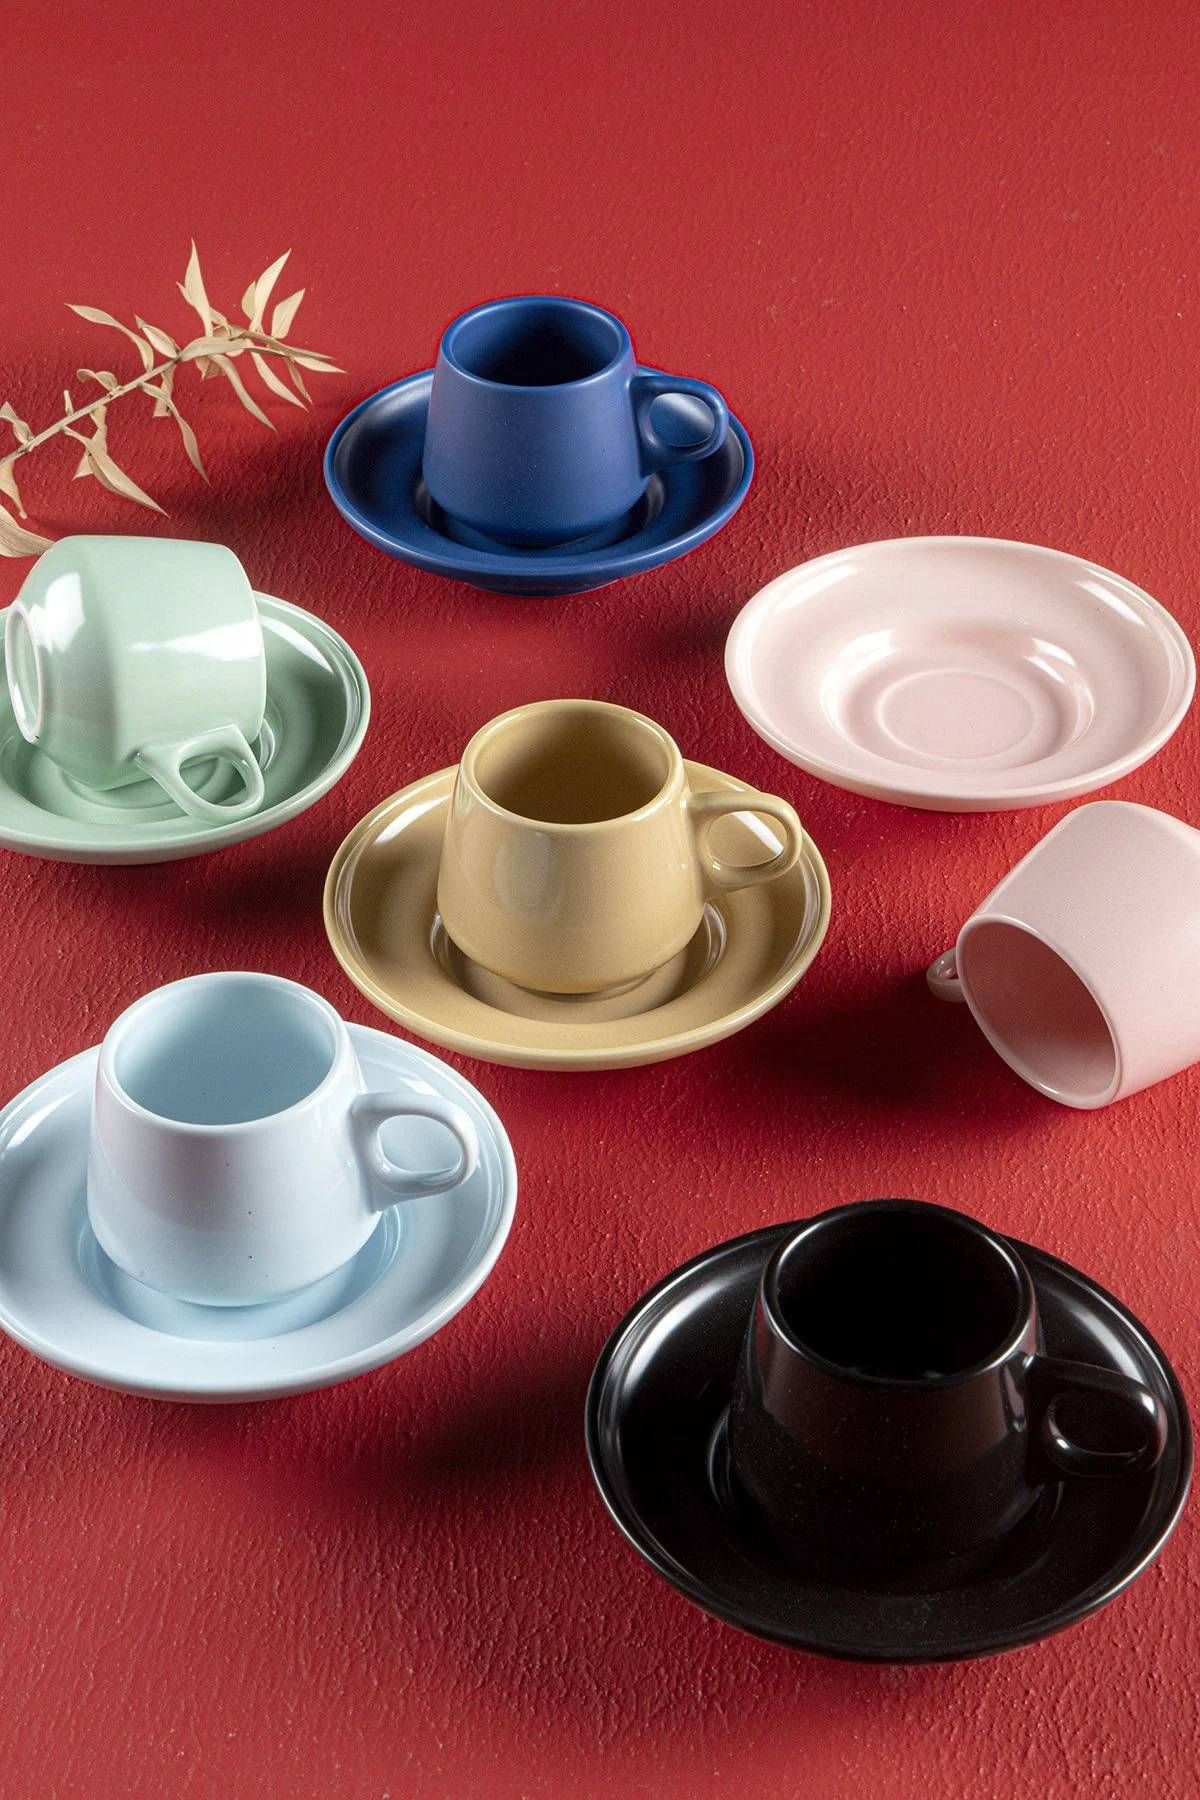 AROW Porselen Kahve Fincanı Takımı Renkli 12 Parça